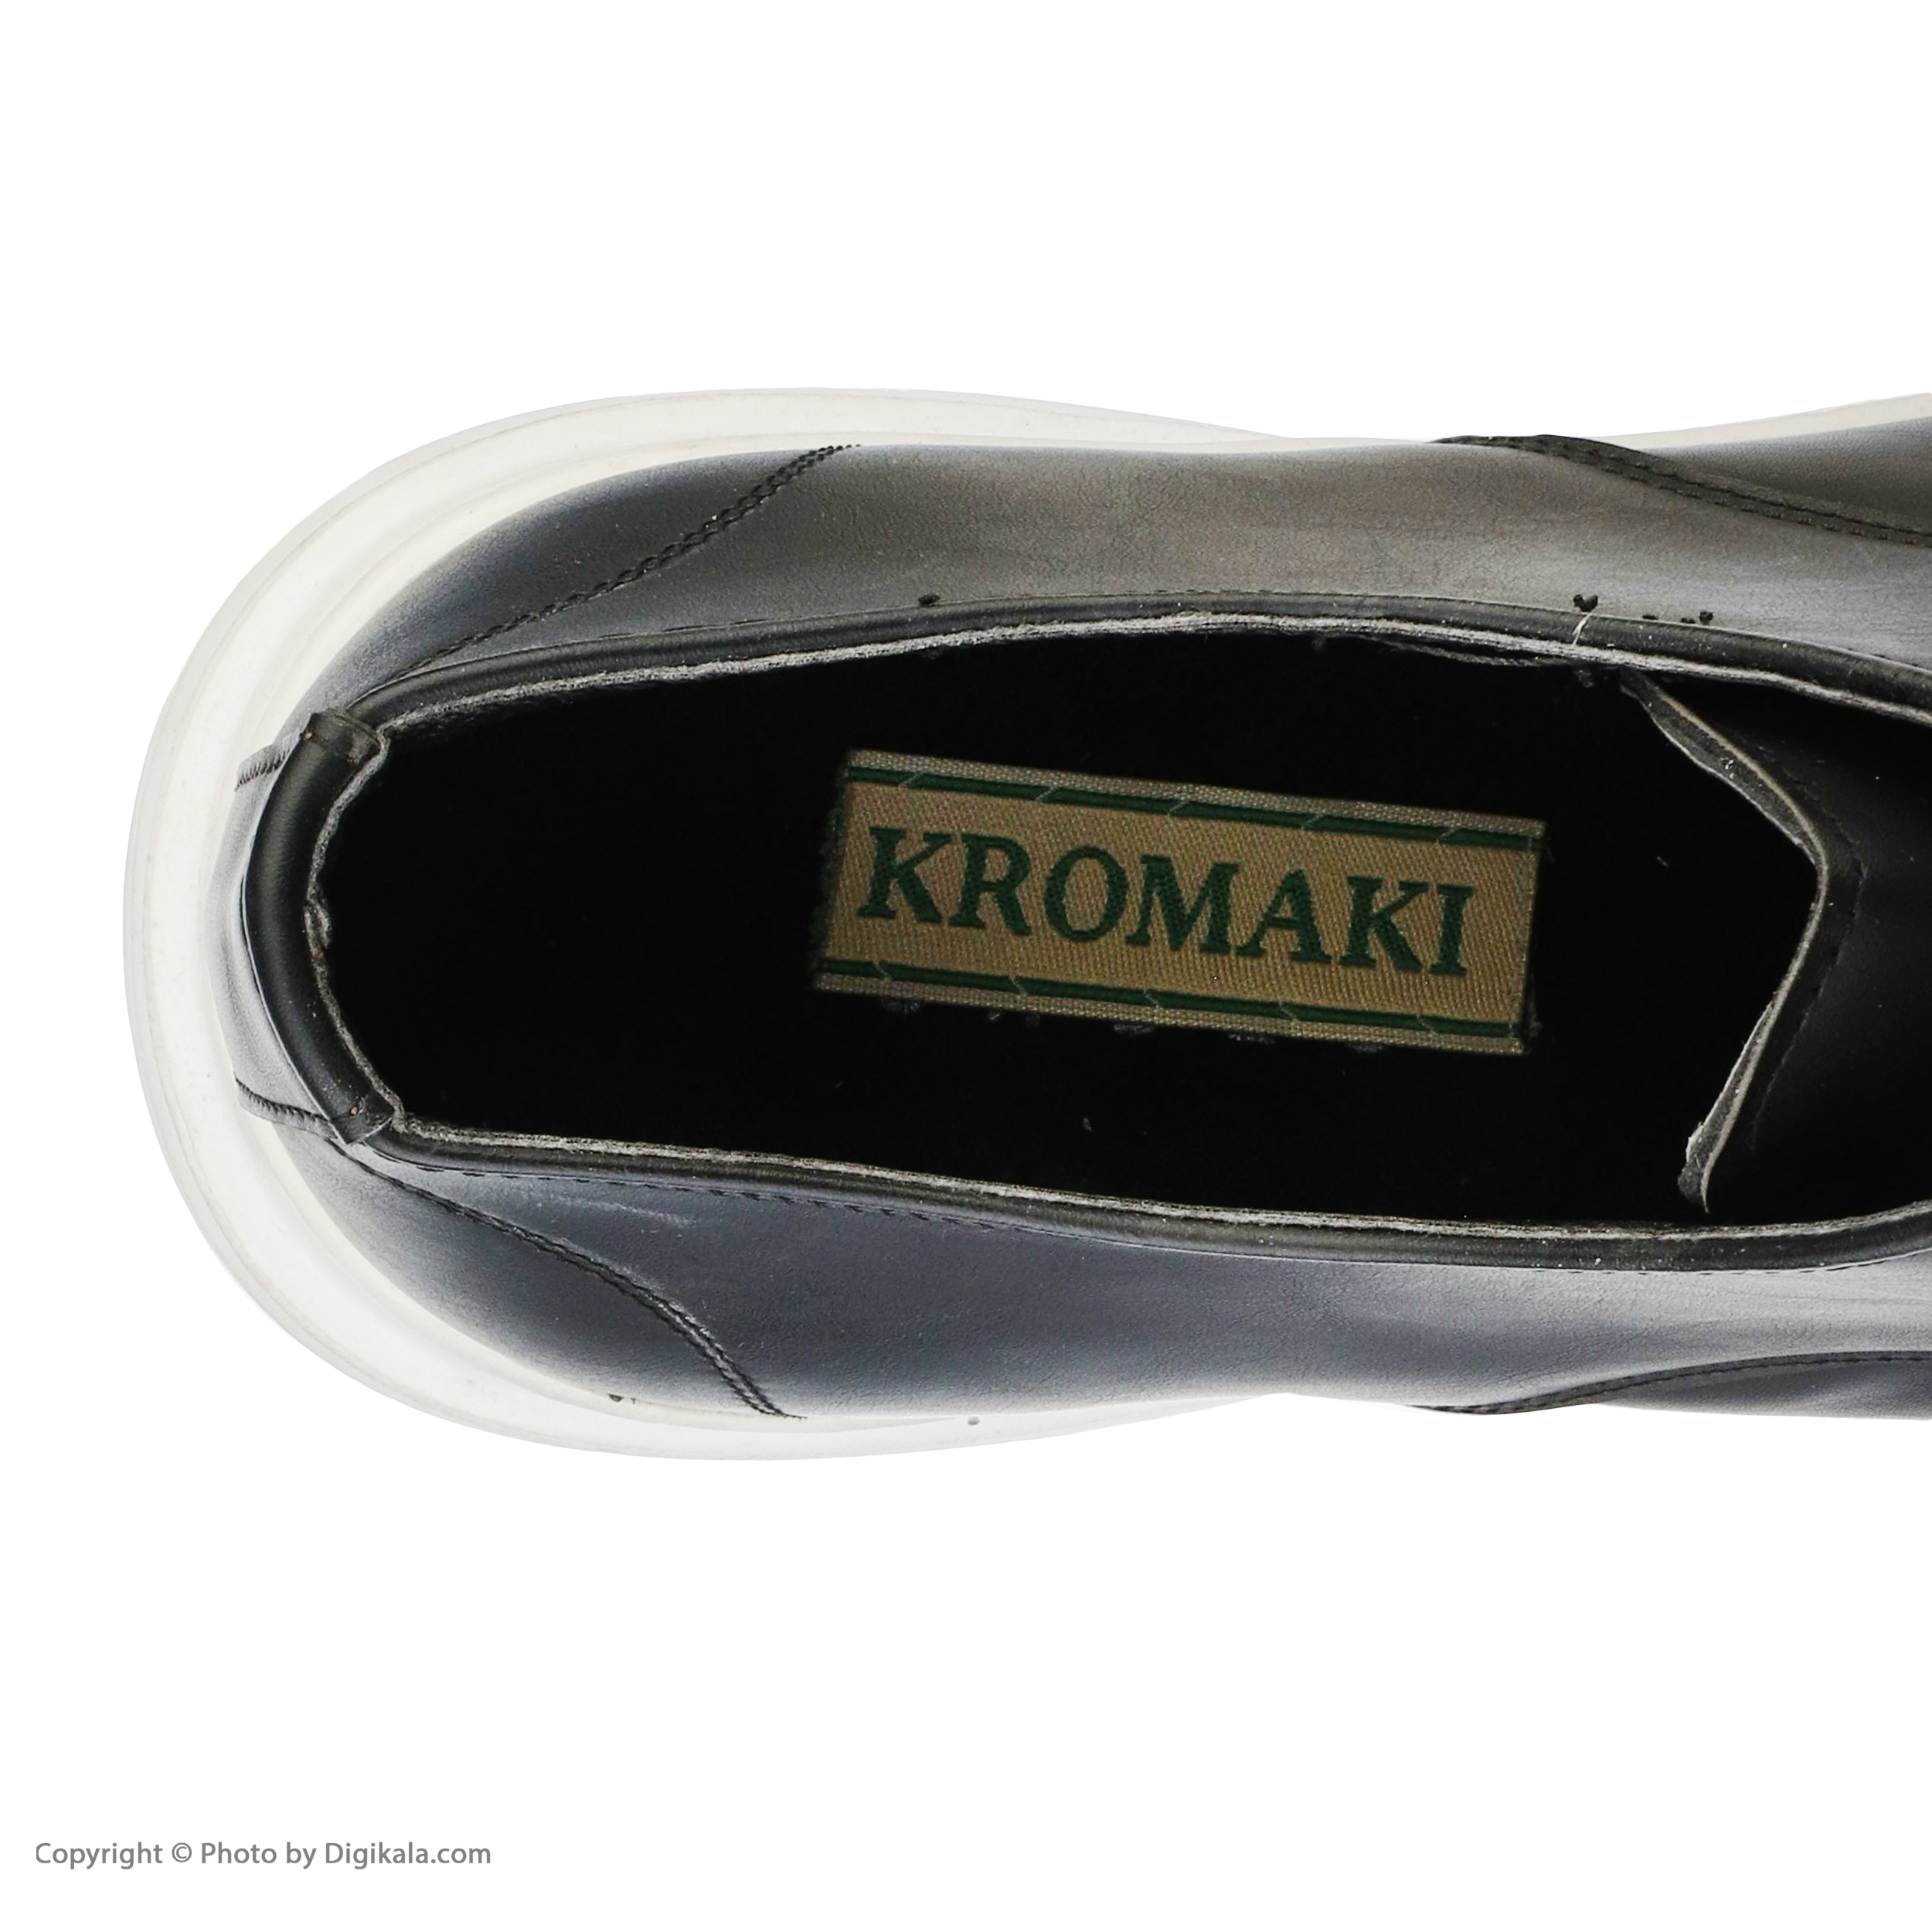 کفش مردانه کروماکی مدل kmfw30 -  - 7